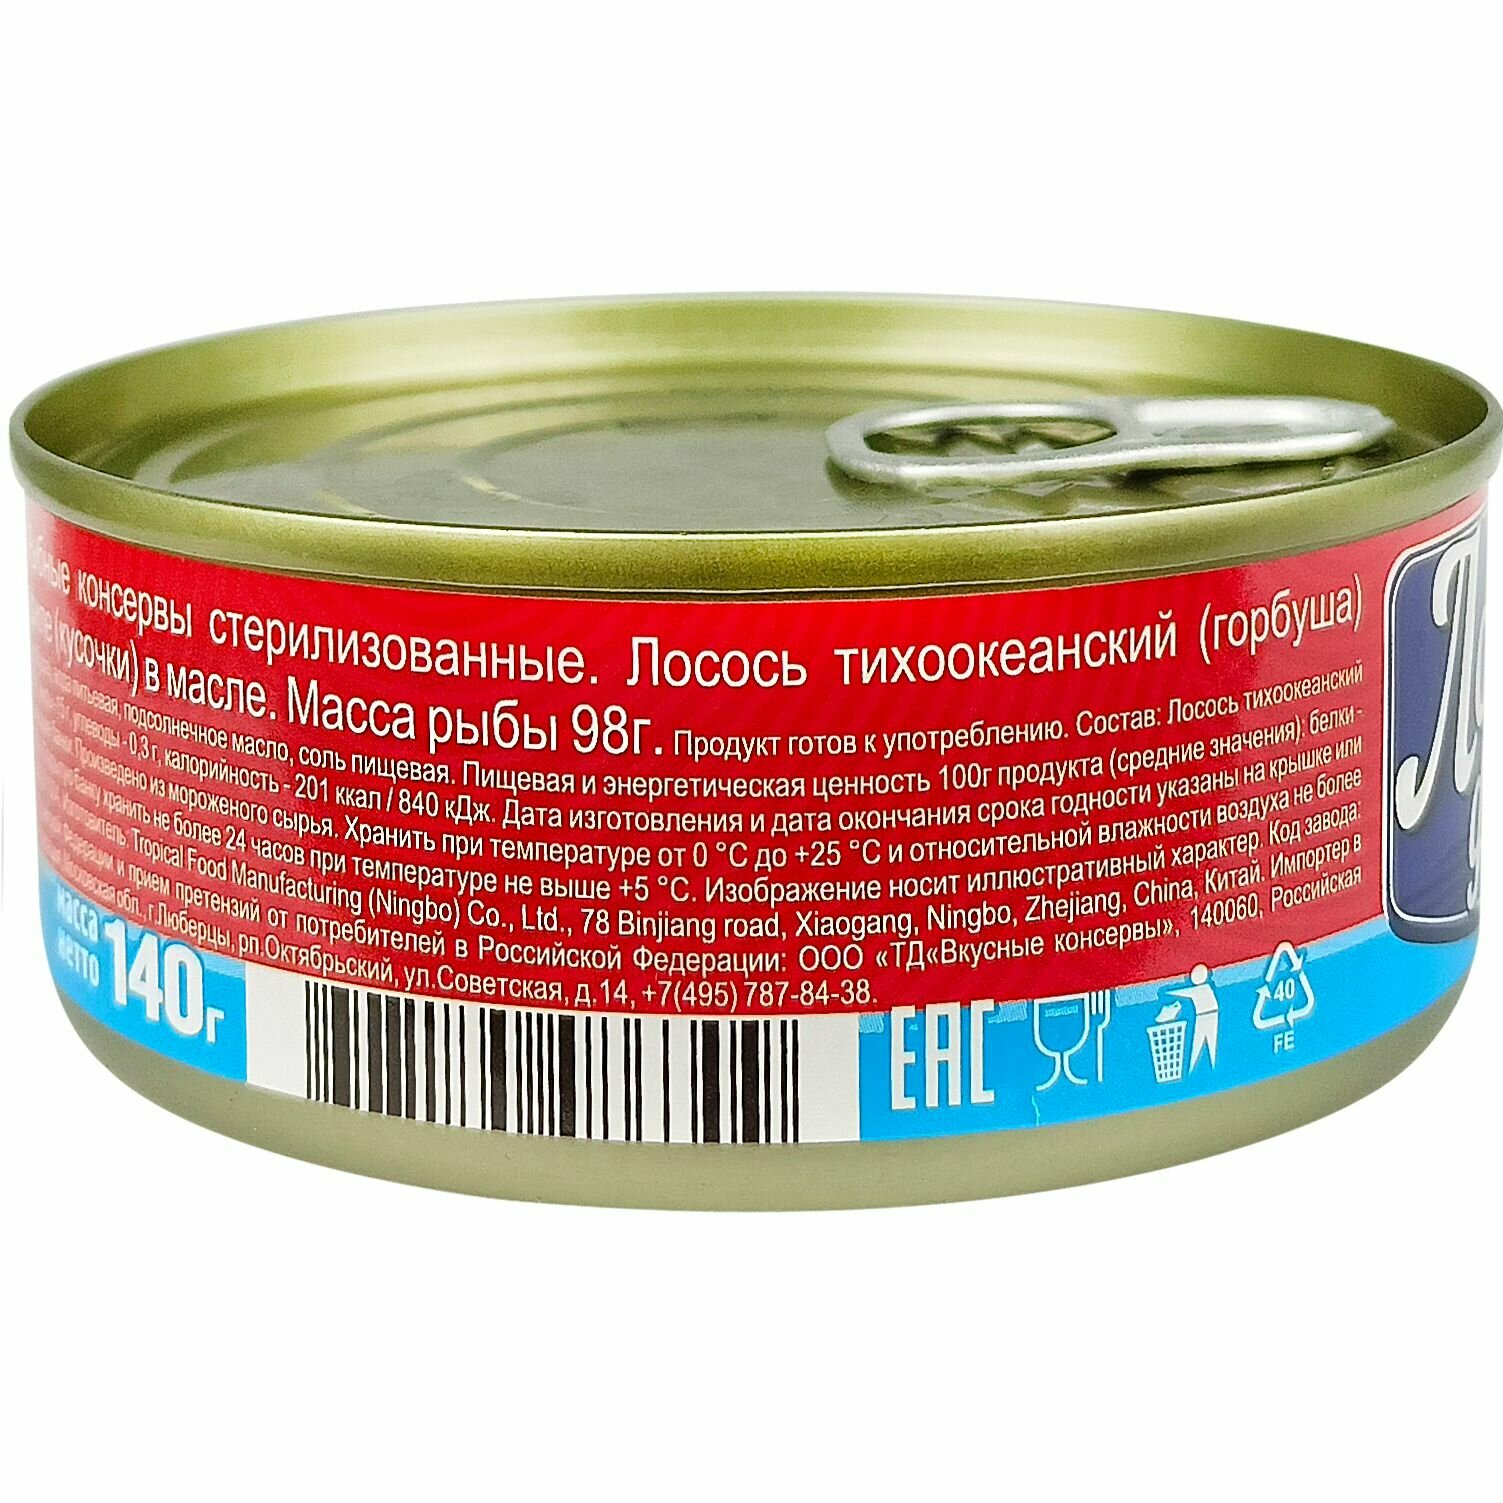 Консервы рыбные "Вкусные консервы" - Лосось тихоокеанский филе в масле, 140 г - 2 шт